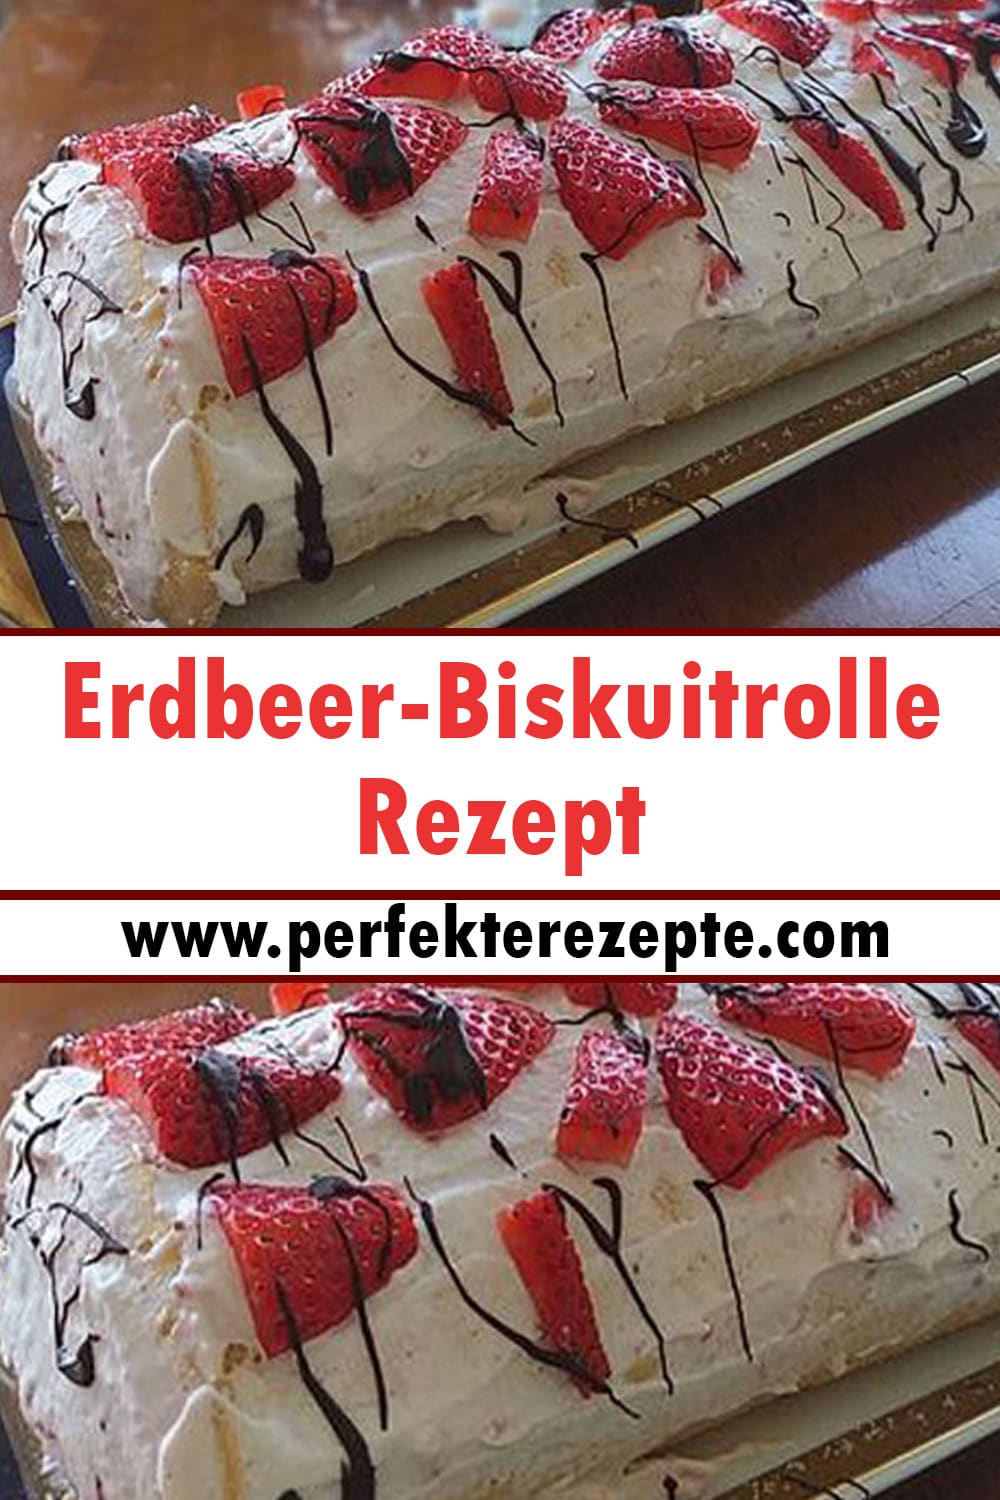 Erdbeer-Biskuitrolle Rezept